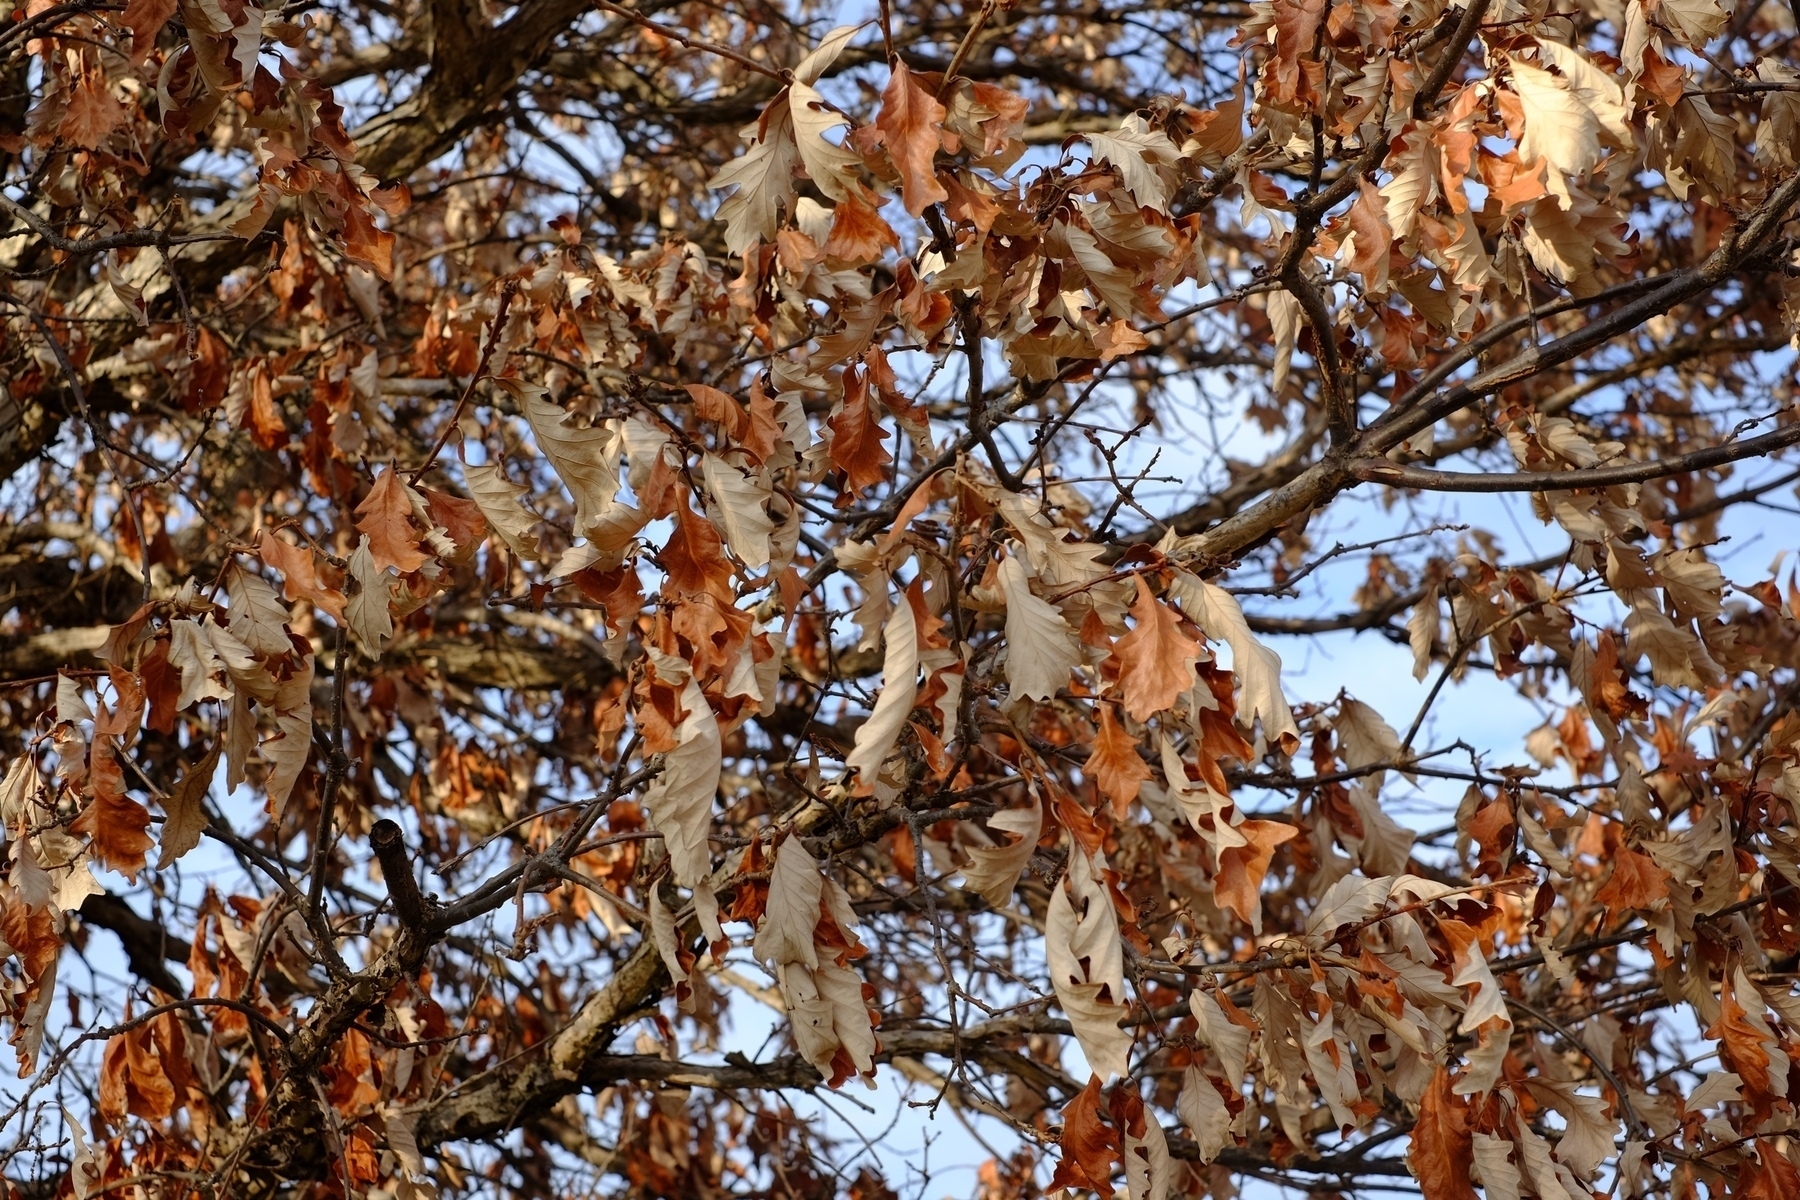 dead leaves on a tree in winter